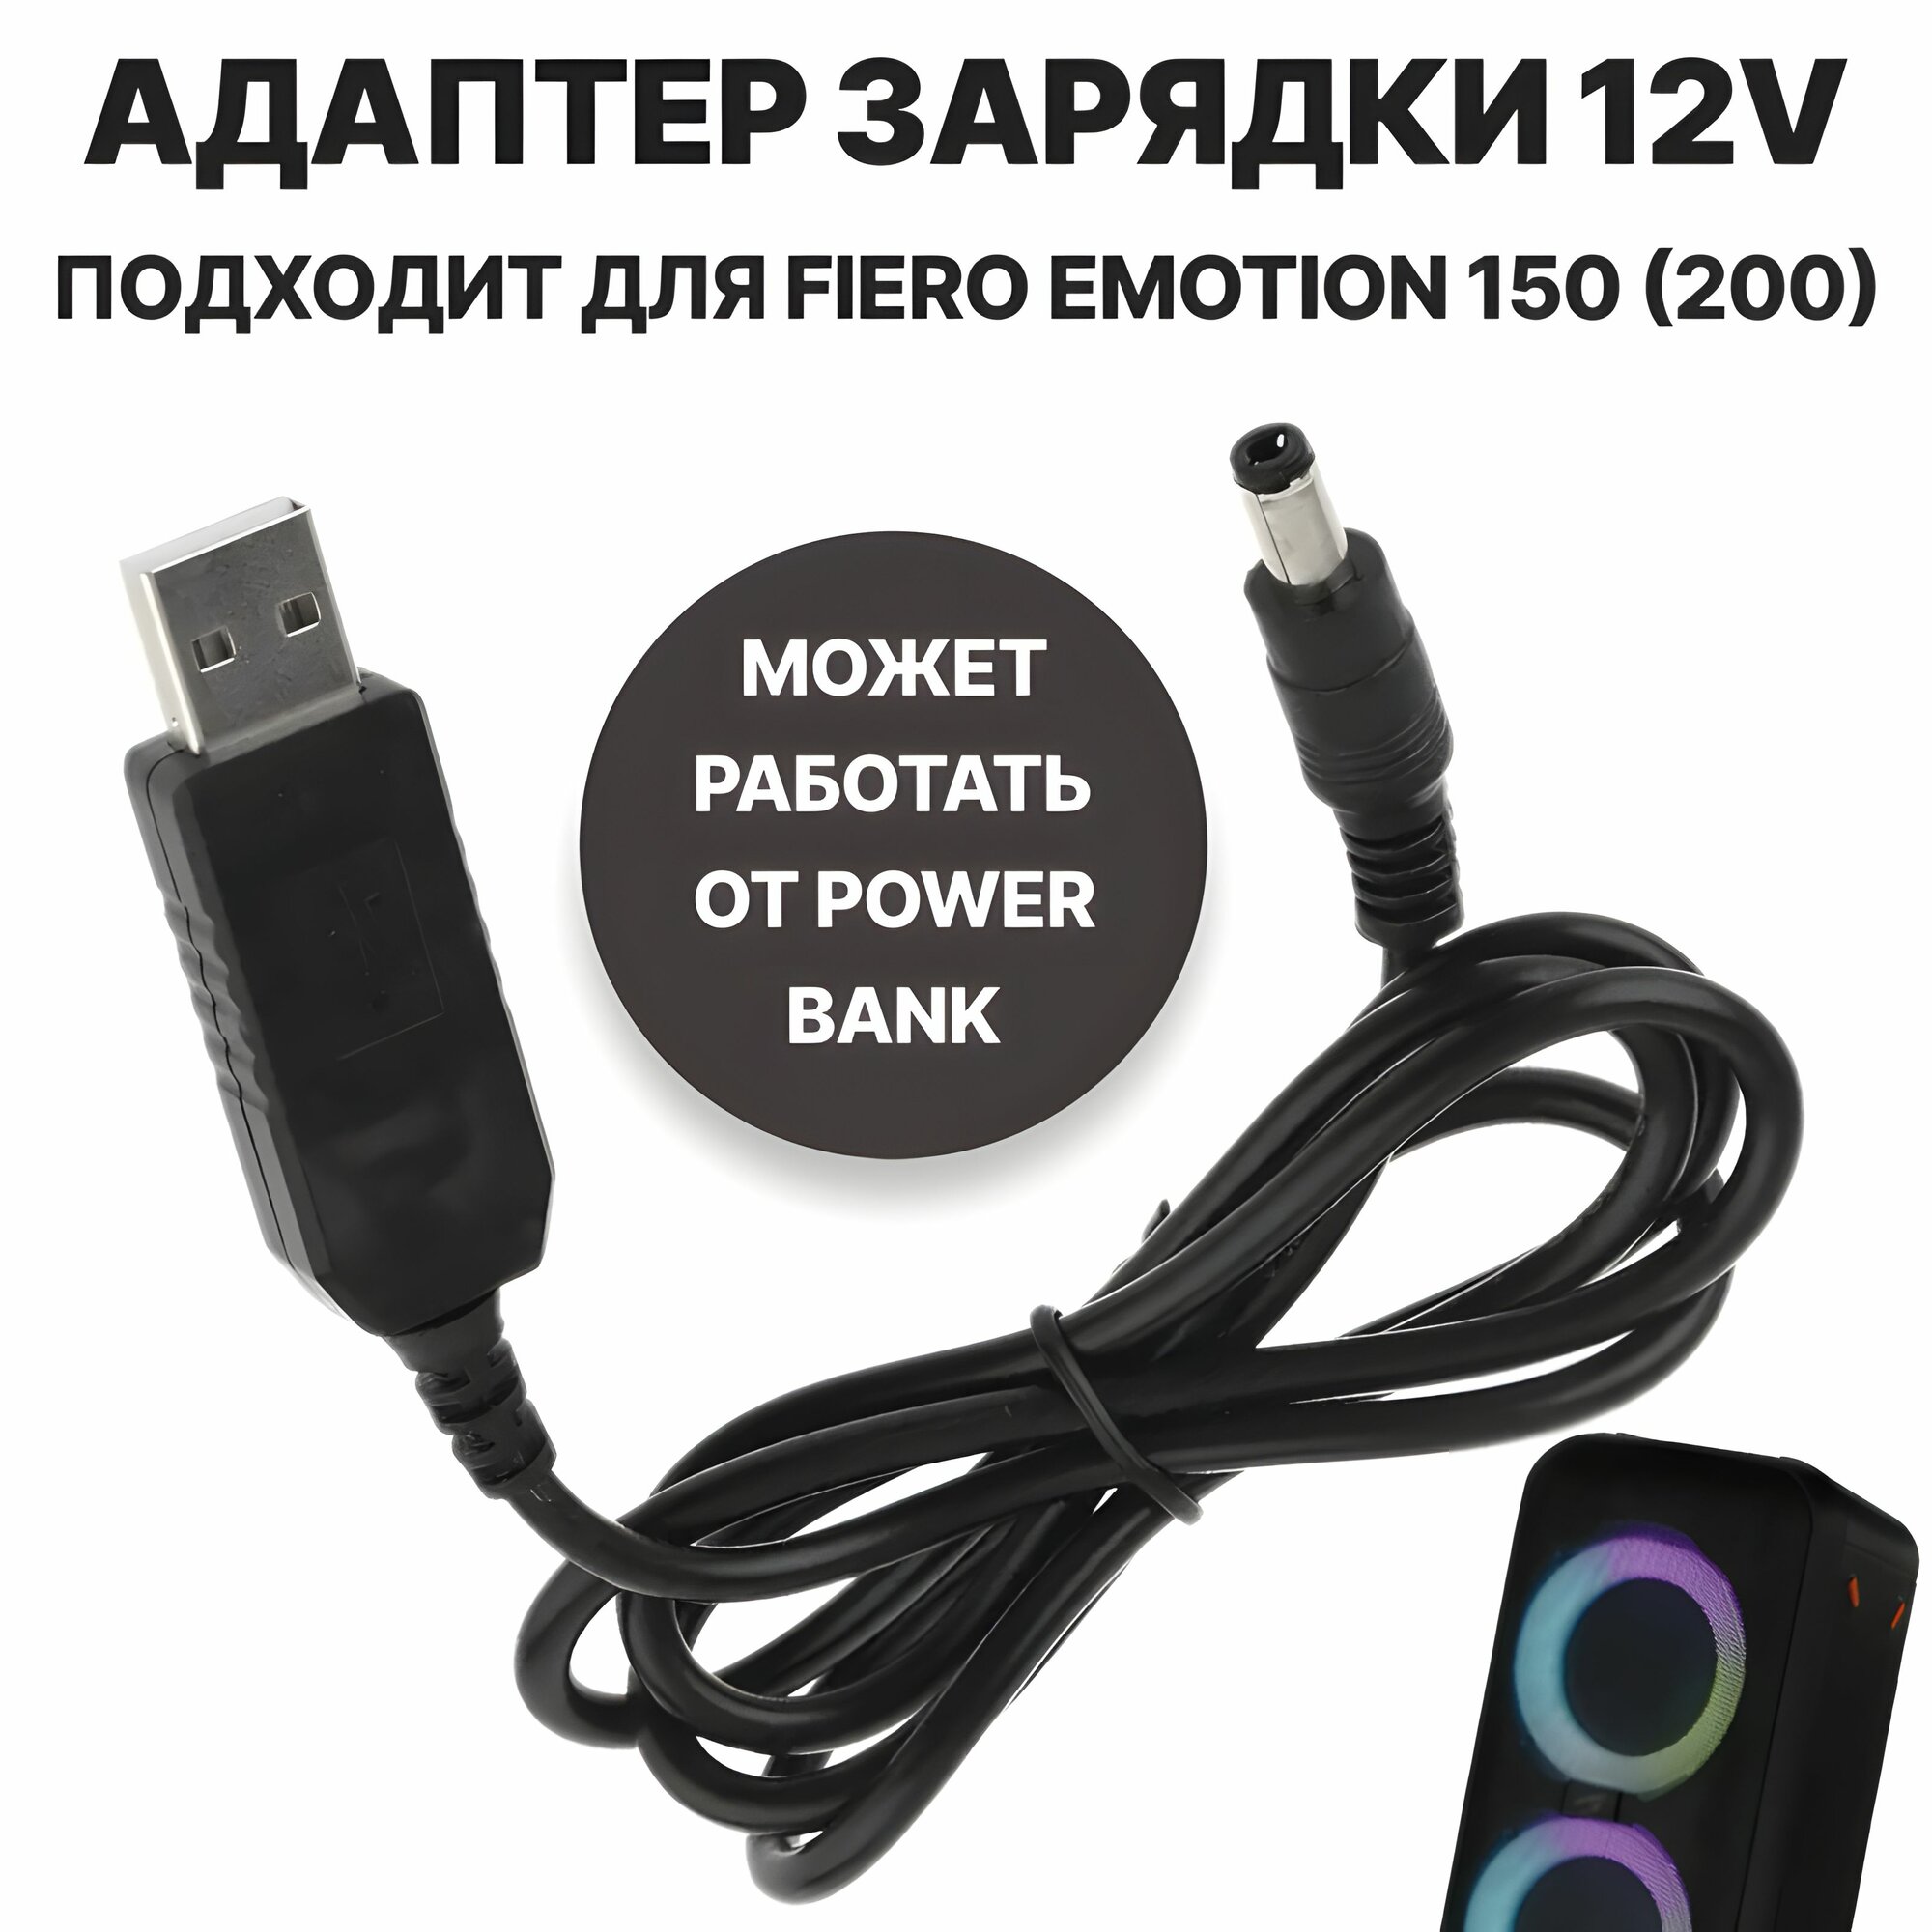 Кабель зарядки (питания) 12 вольт от пауэрбанка/зарядных устройств с поддержкой QC2.0/3.0 (адаптер USB - DC 55*21(25) 3А) подходит для Fiero Emotion